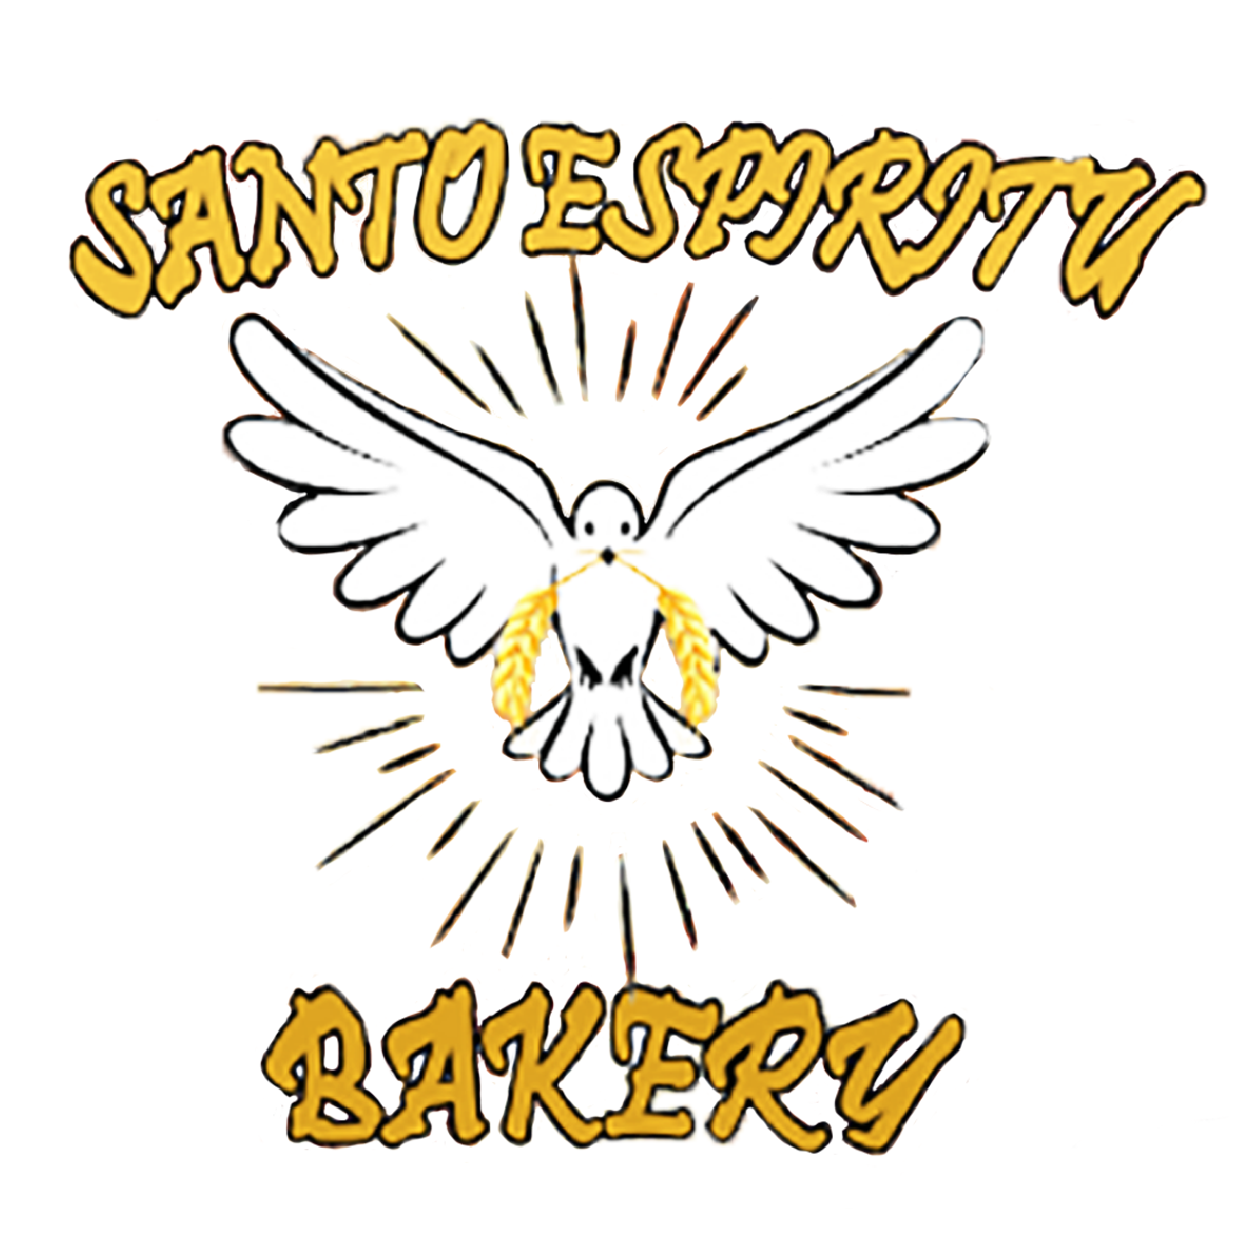 Santo Espiritu Bakery logo